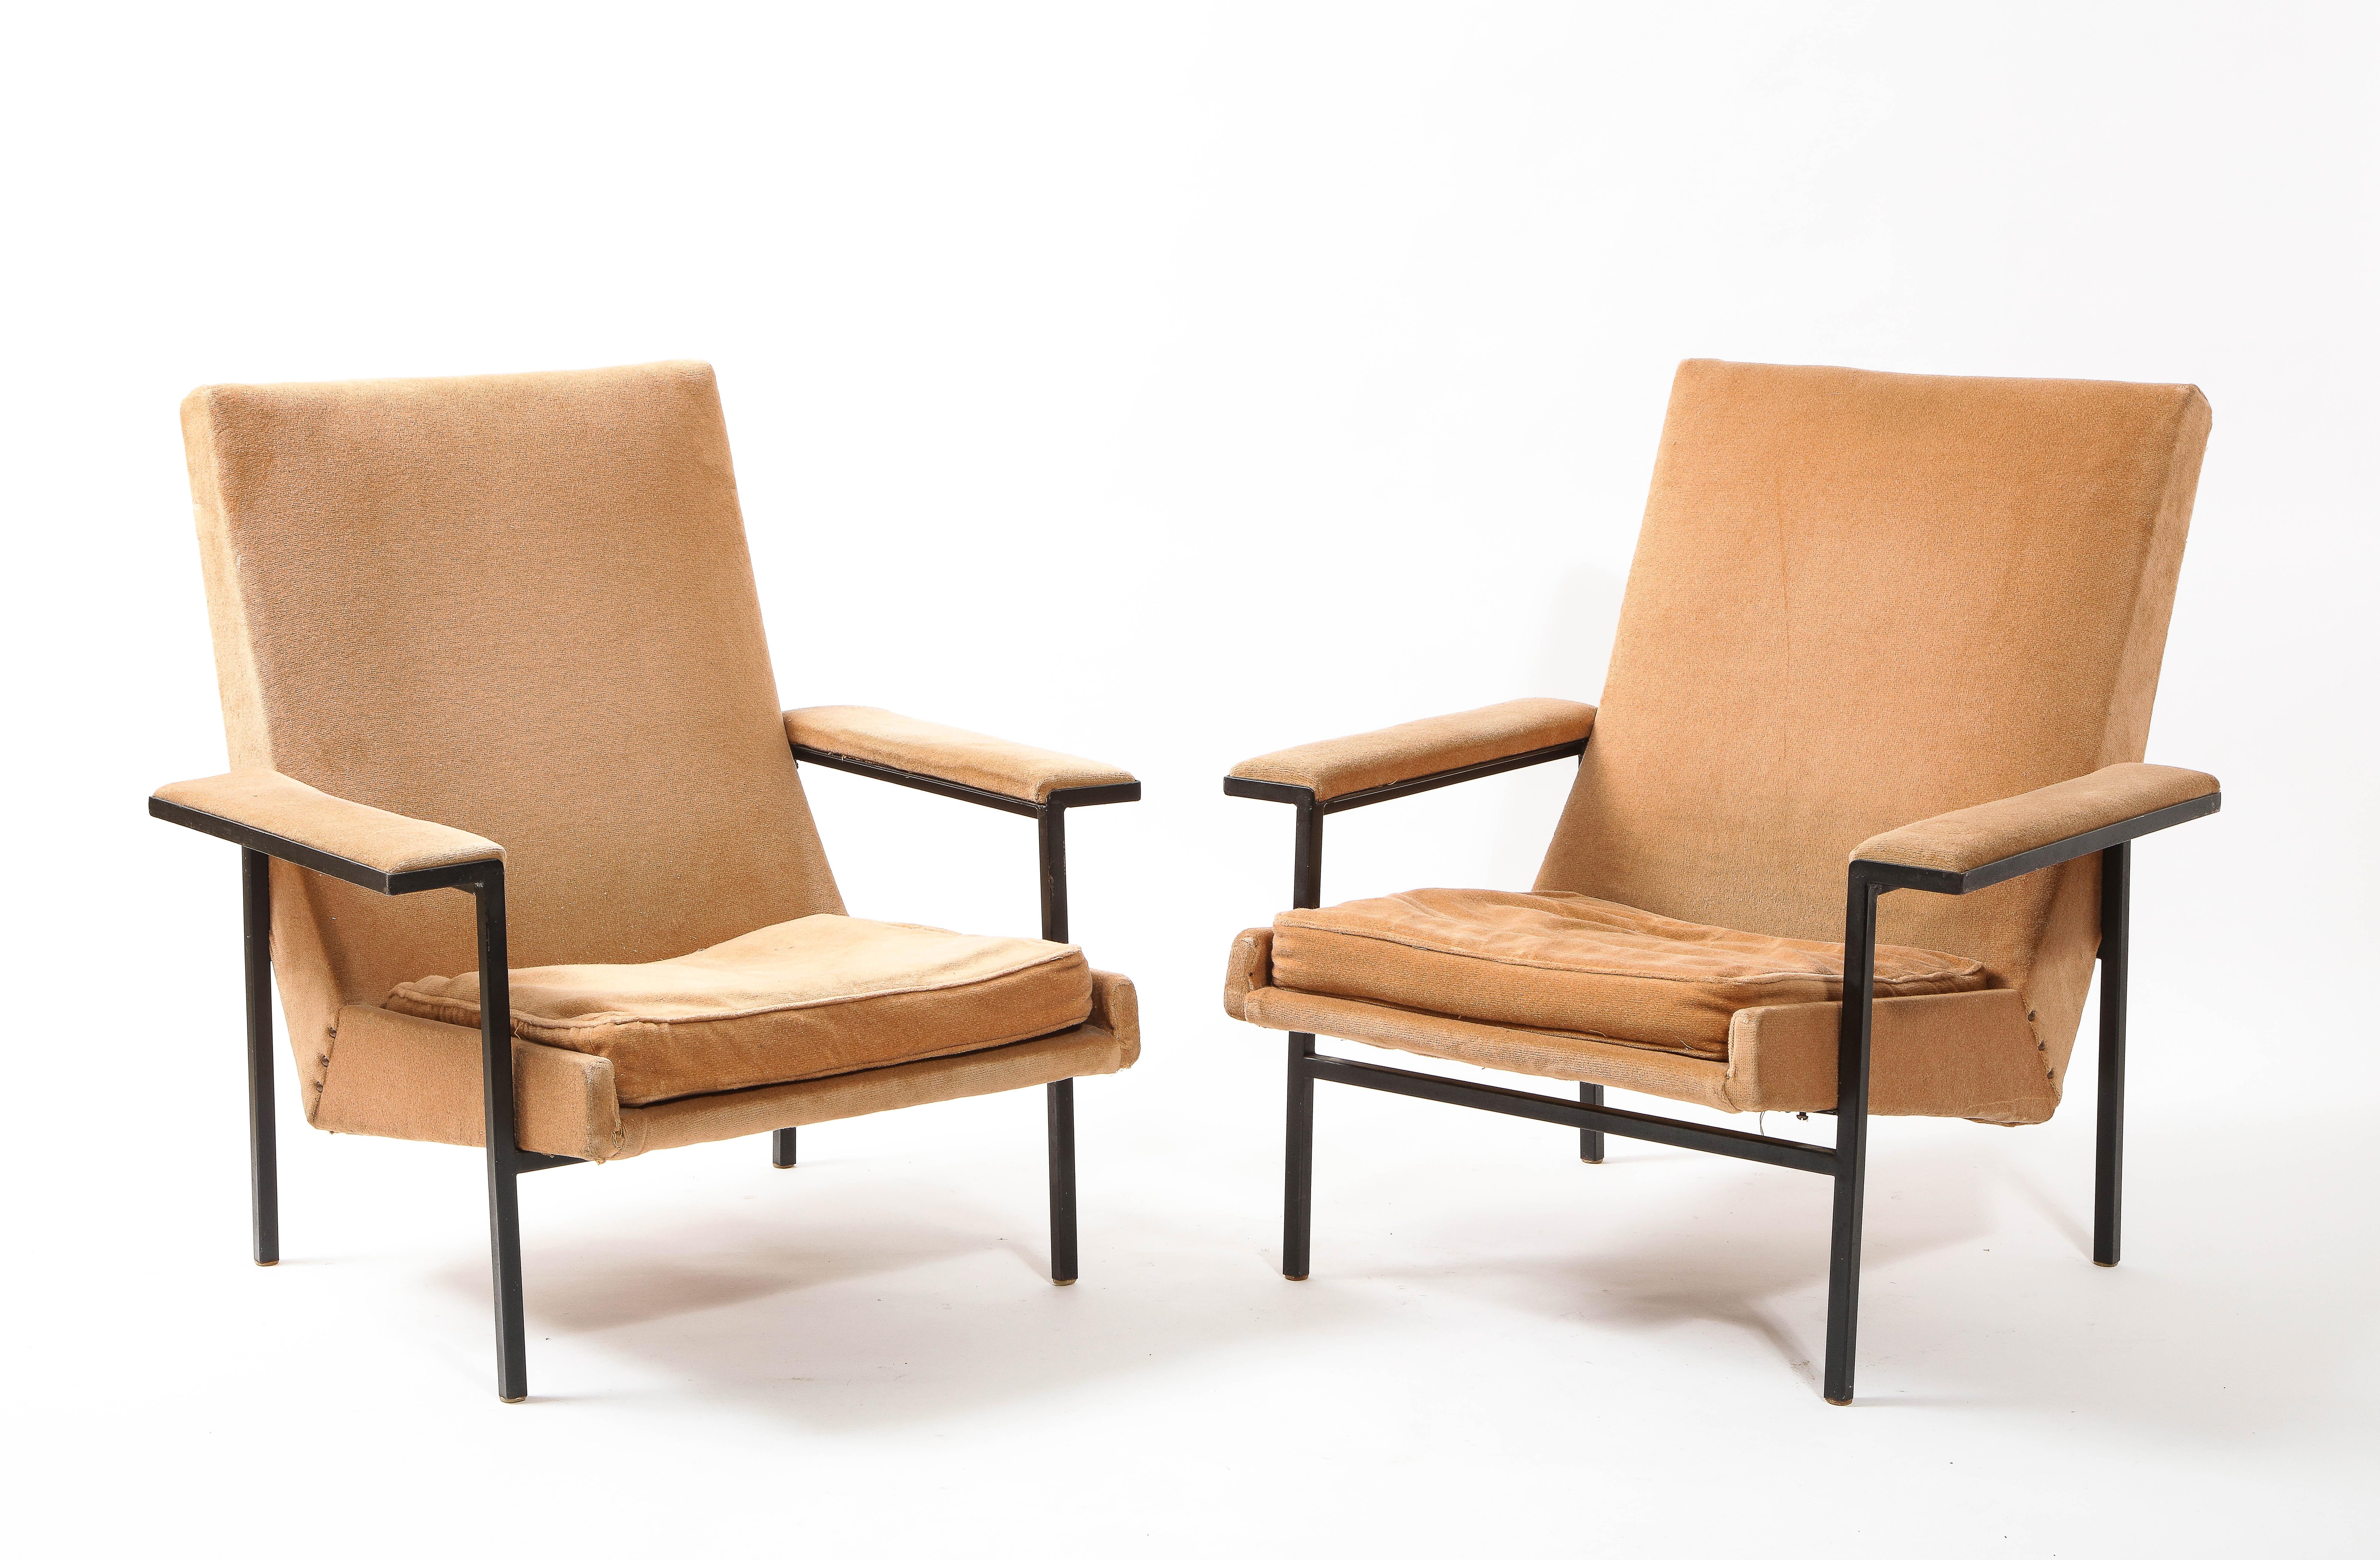 Rare paire de fauteuils conçus par le Studio A.R.P fondé en 1950 par Pierre Guariche aux côtés de Motte et Mortier. Une base en acier laqué faite de tubes carrés supporte une assise rembourrée que l'on retrouve sur d'autres itérations de cette